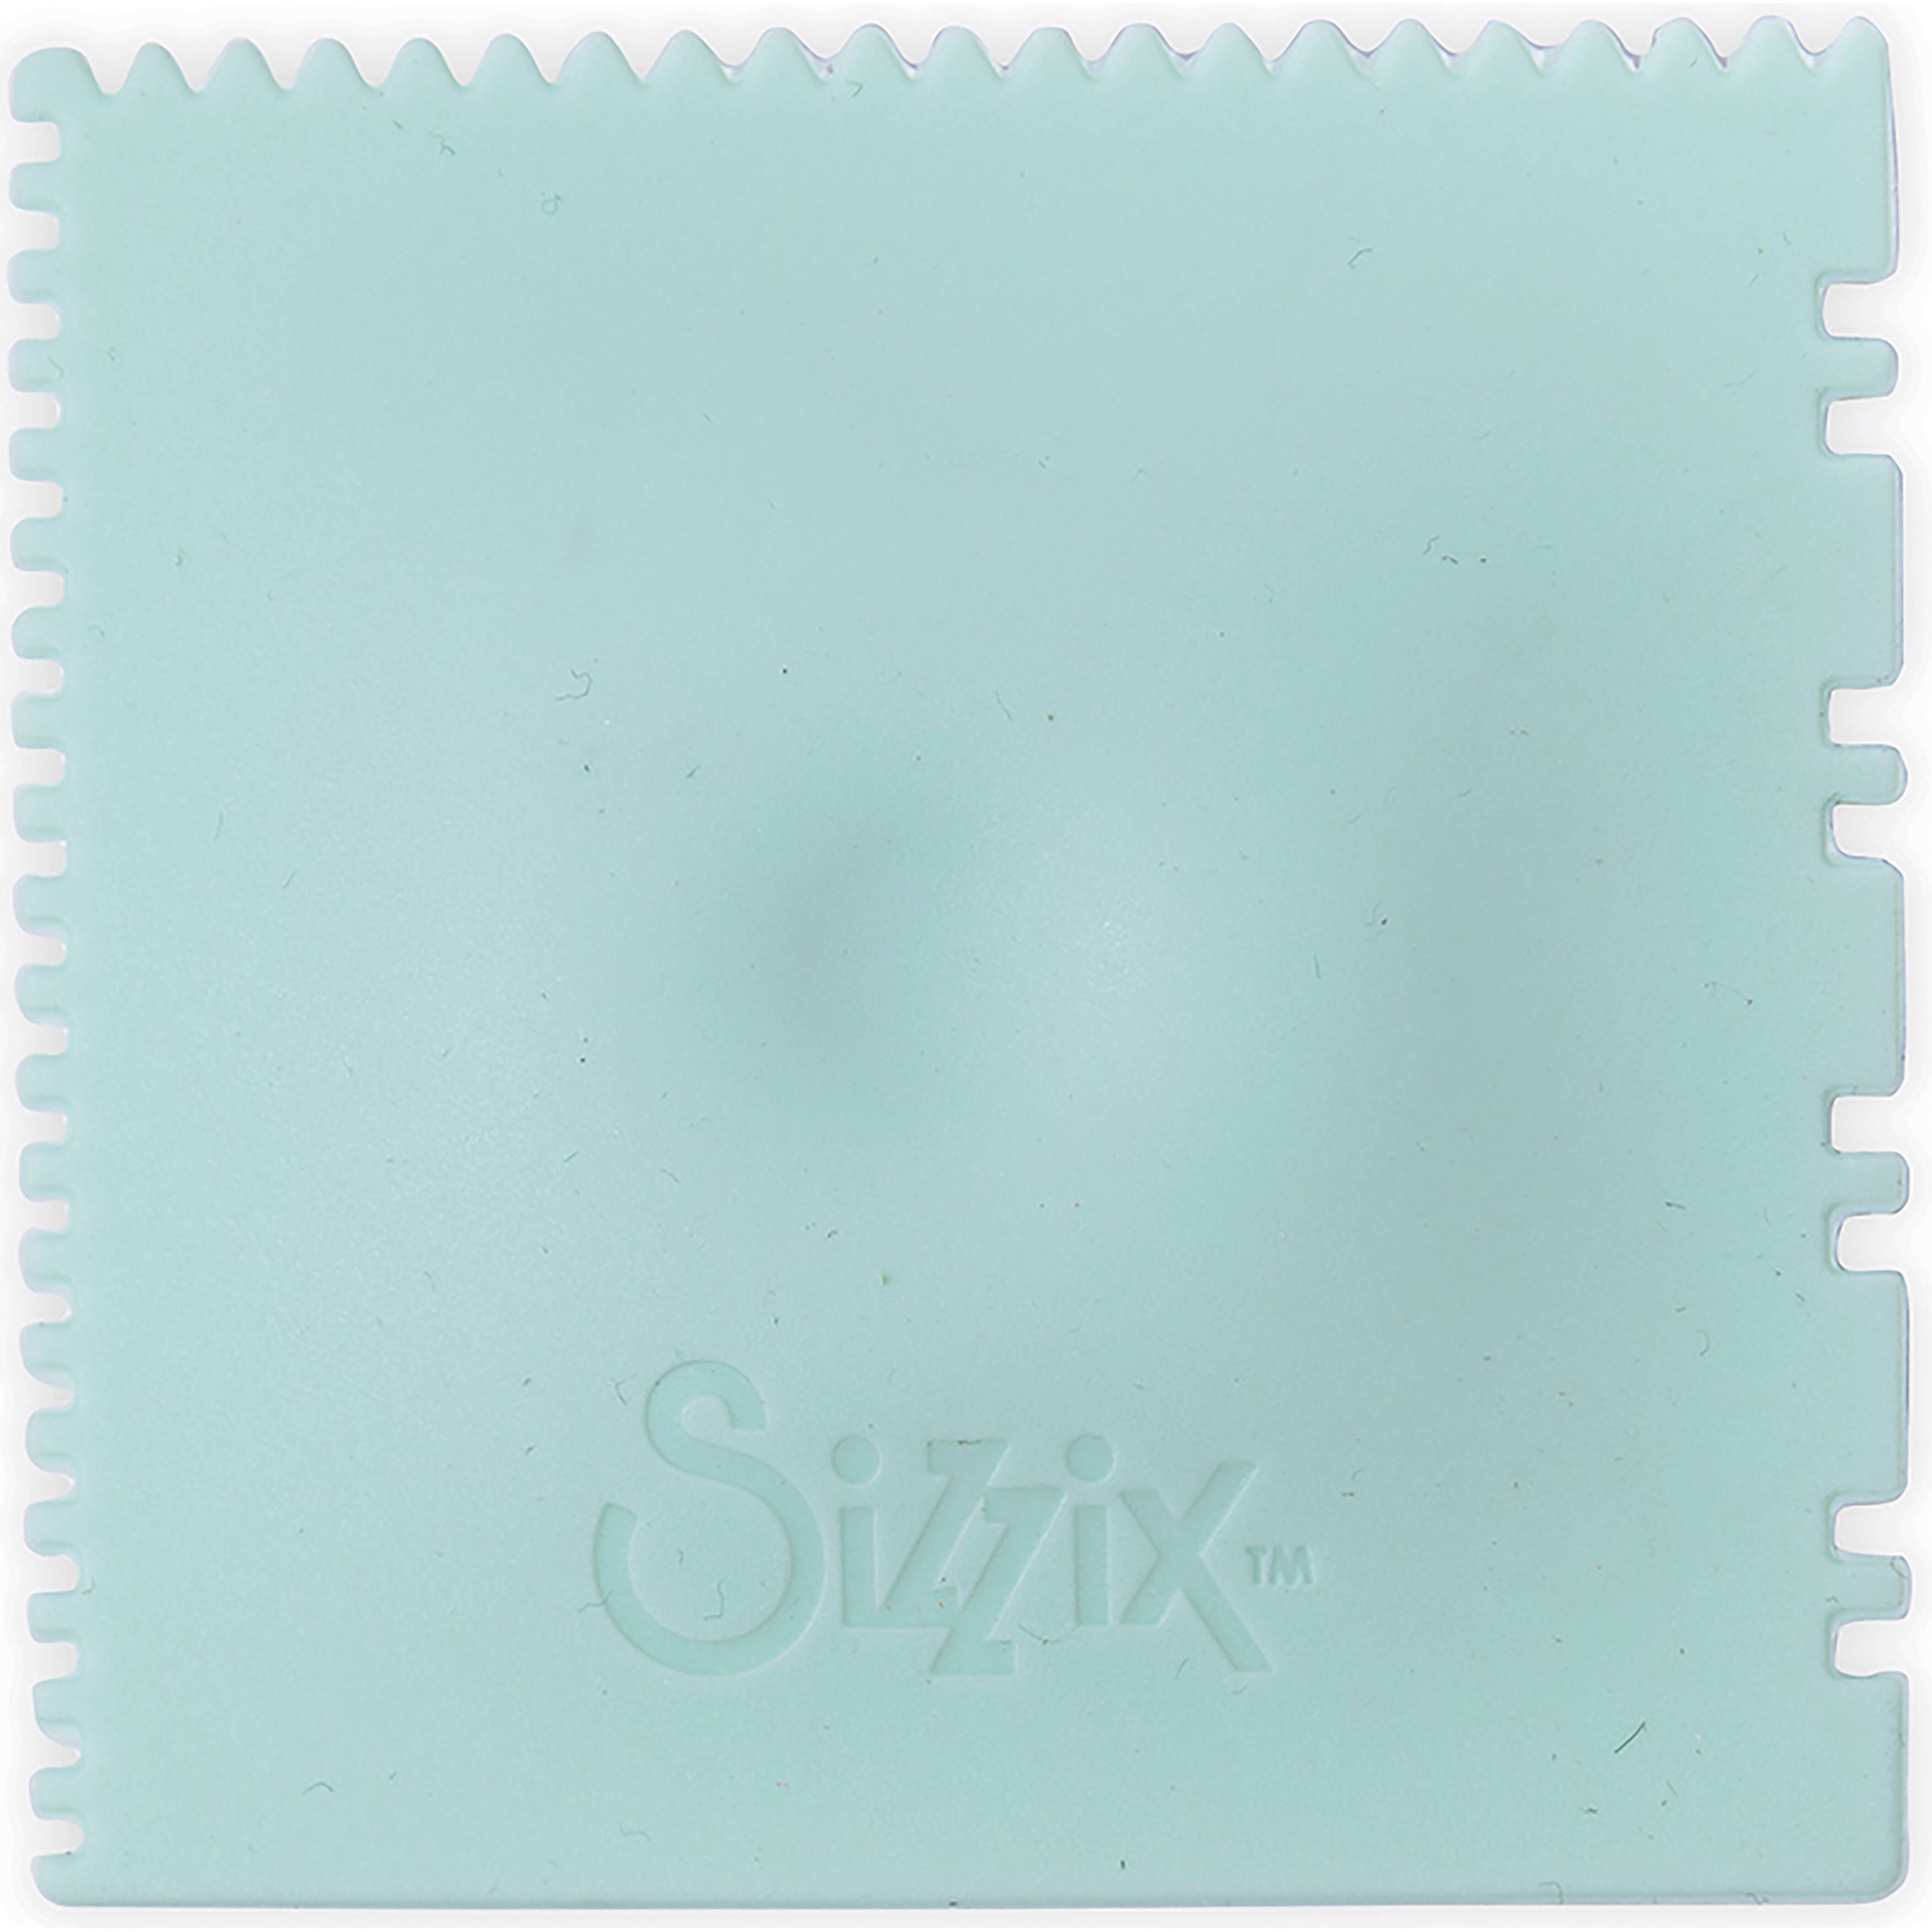 Sizzix&#x2122; Mint Making Tool Texture Tool